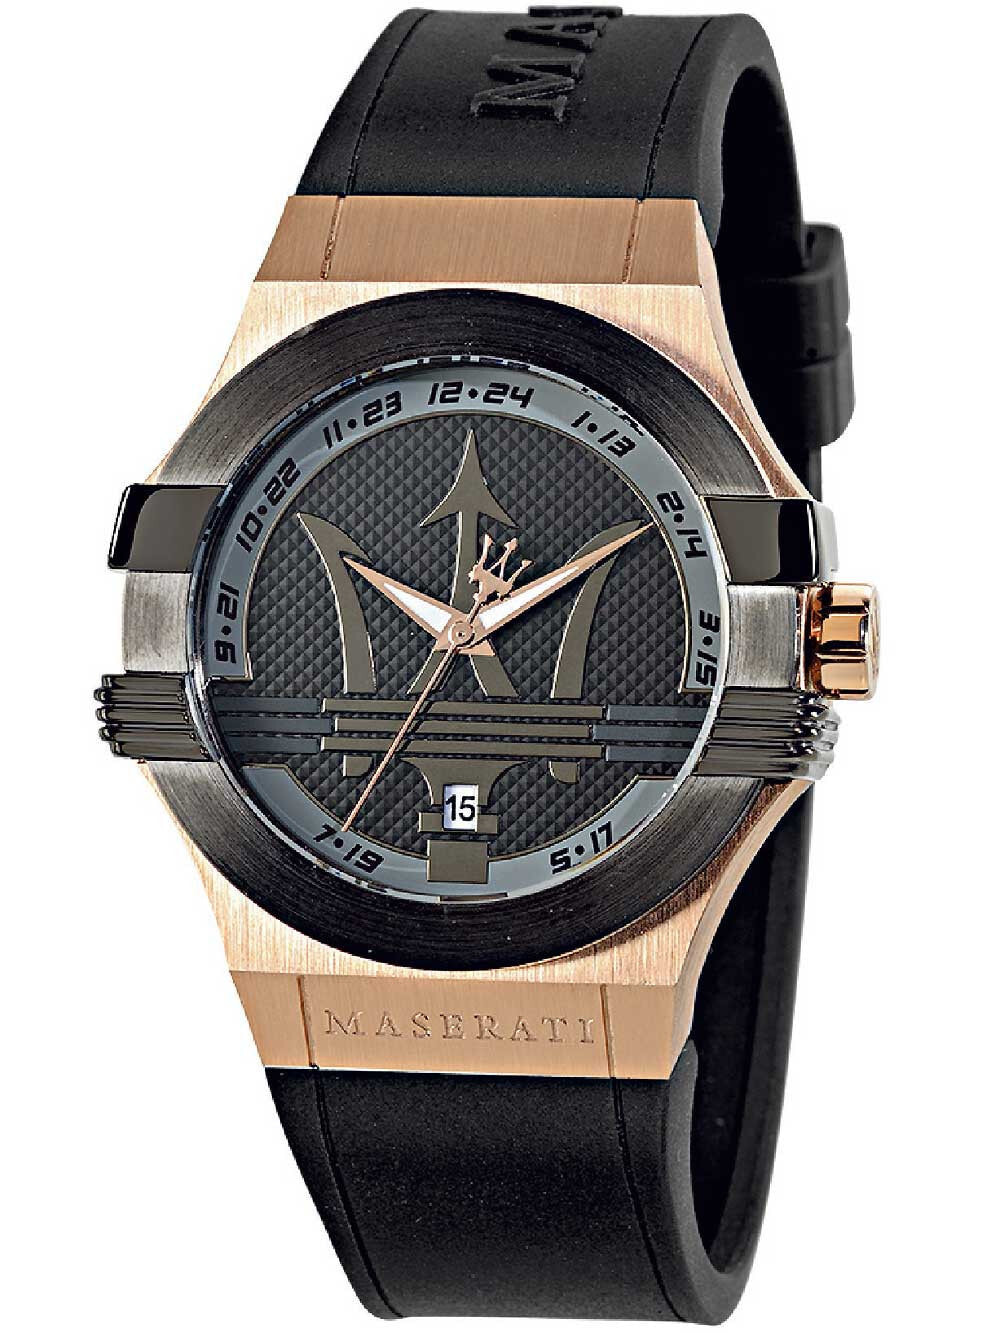 Мужские часы наручные с черным силиконовым ремешком Maserati R8851108002 Power mens watch 40mm 10ATM